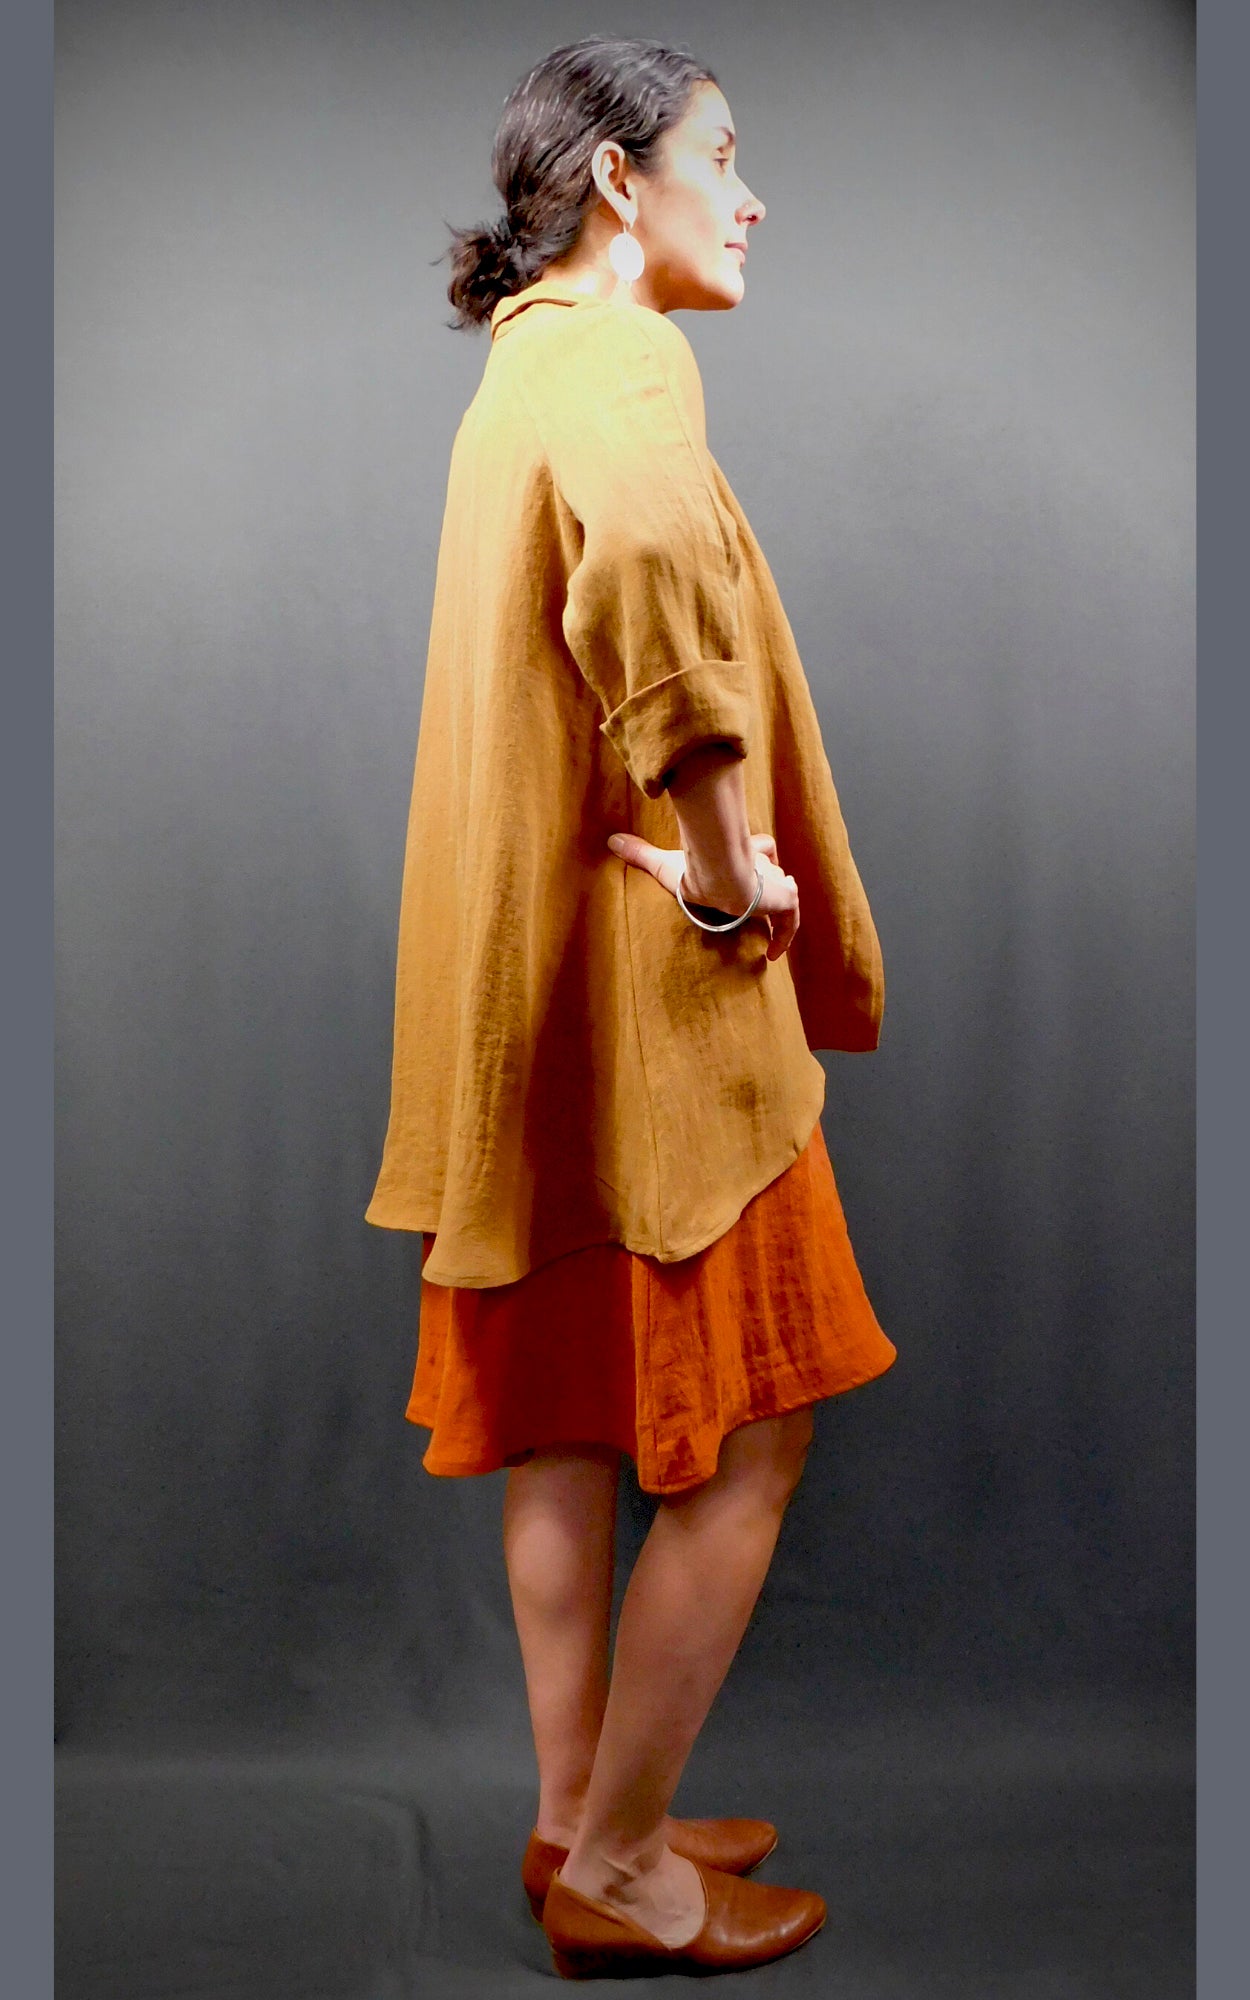 100% Linen Sleeveless Dress w pockets, colour Cognac (Orange), worn under 100% Linen Caramel colour Raglan Sleeve Shirt Jacket (back view)